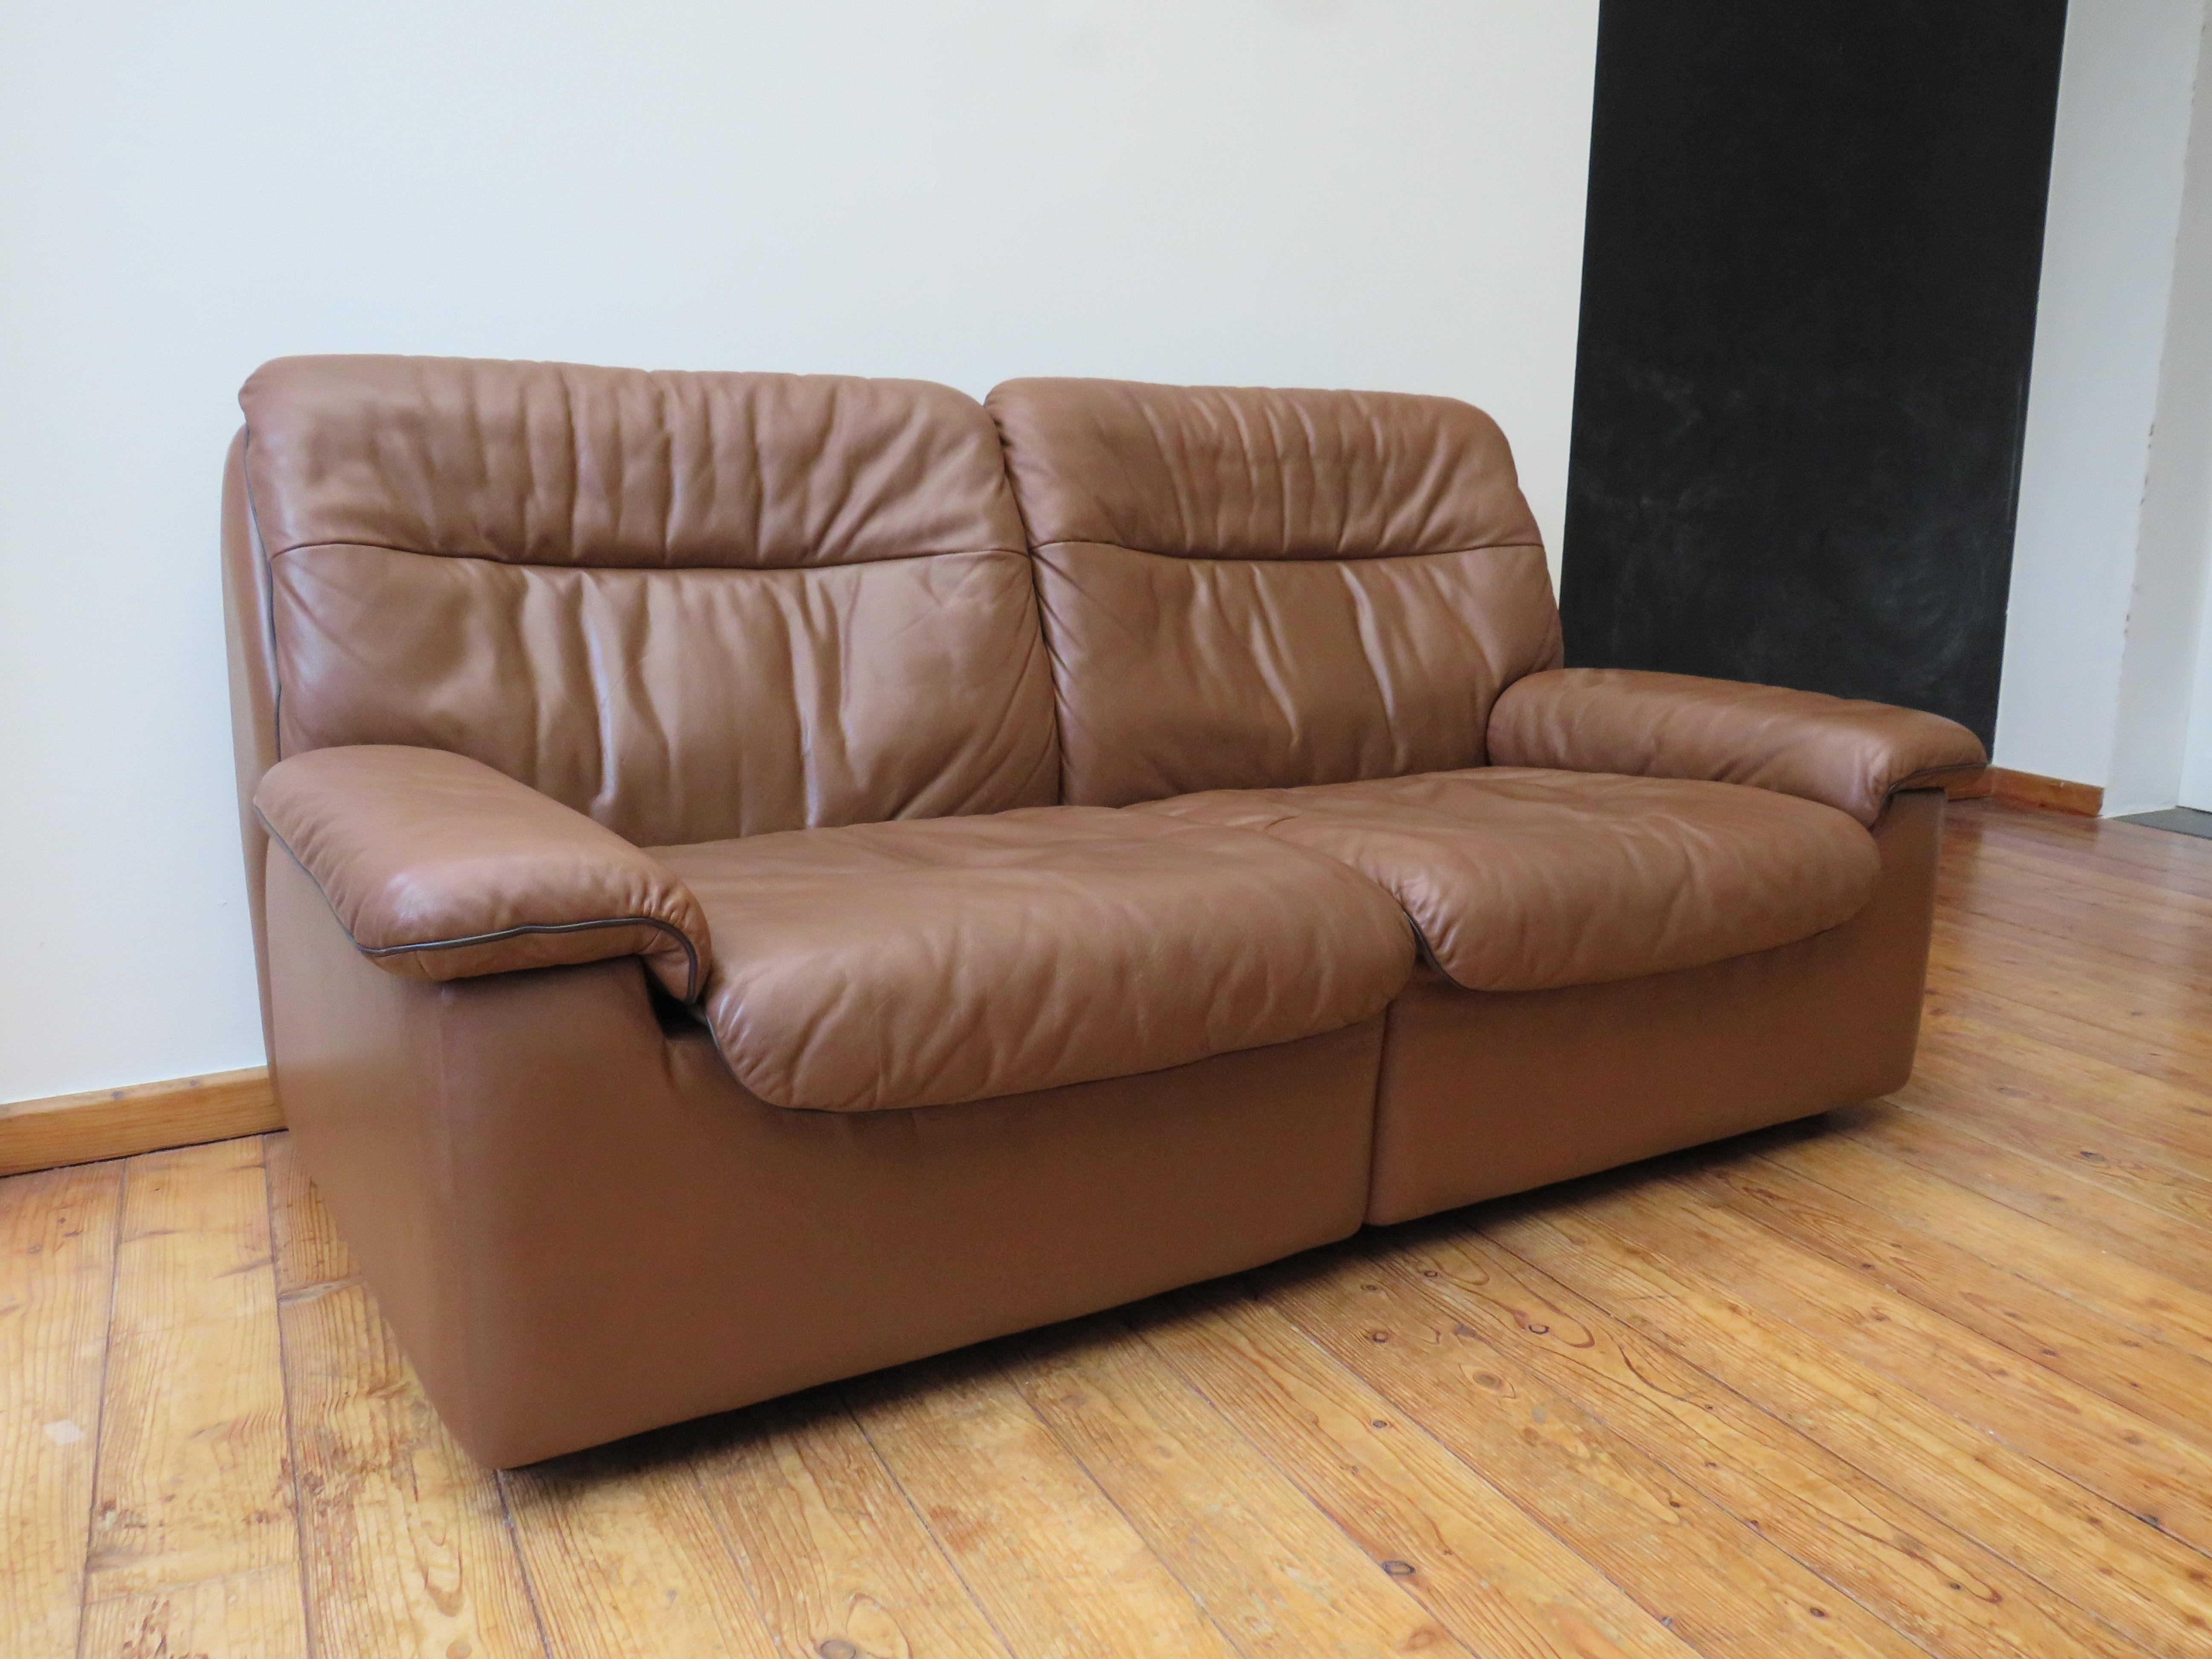 De Sede Sofa, Modell DS 66, hergestellt von De Sede, Schweiz in den 1970er Jahren.
Das Sofa ist aus hochwertigem karamellfarbenem Leder gefertigt und mit braunen Paspeln versehen. Die beiden Sofas sind in einem bemerkenswert guten Zustand.